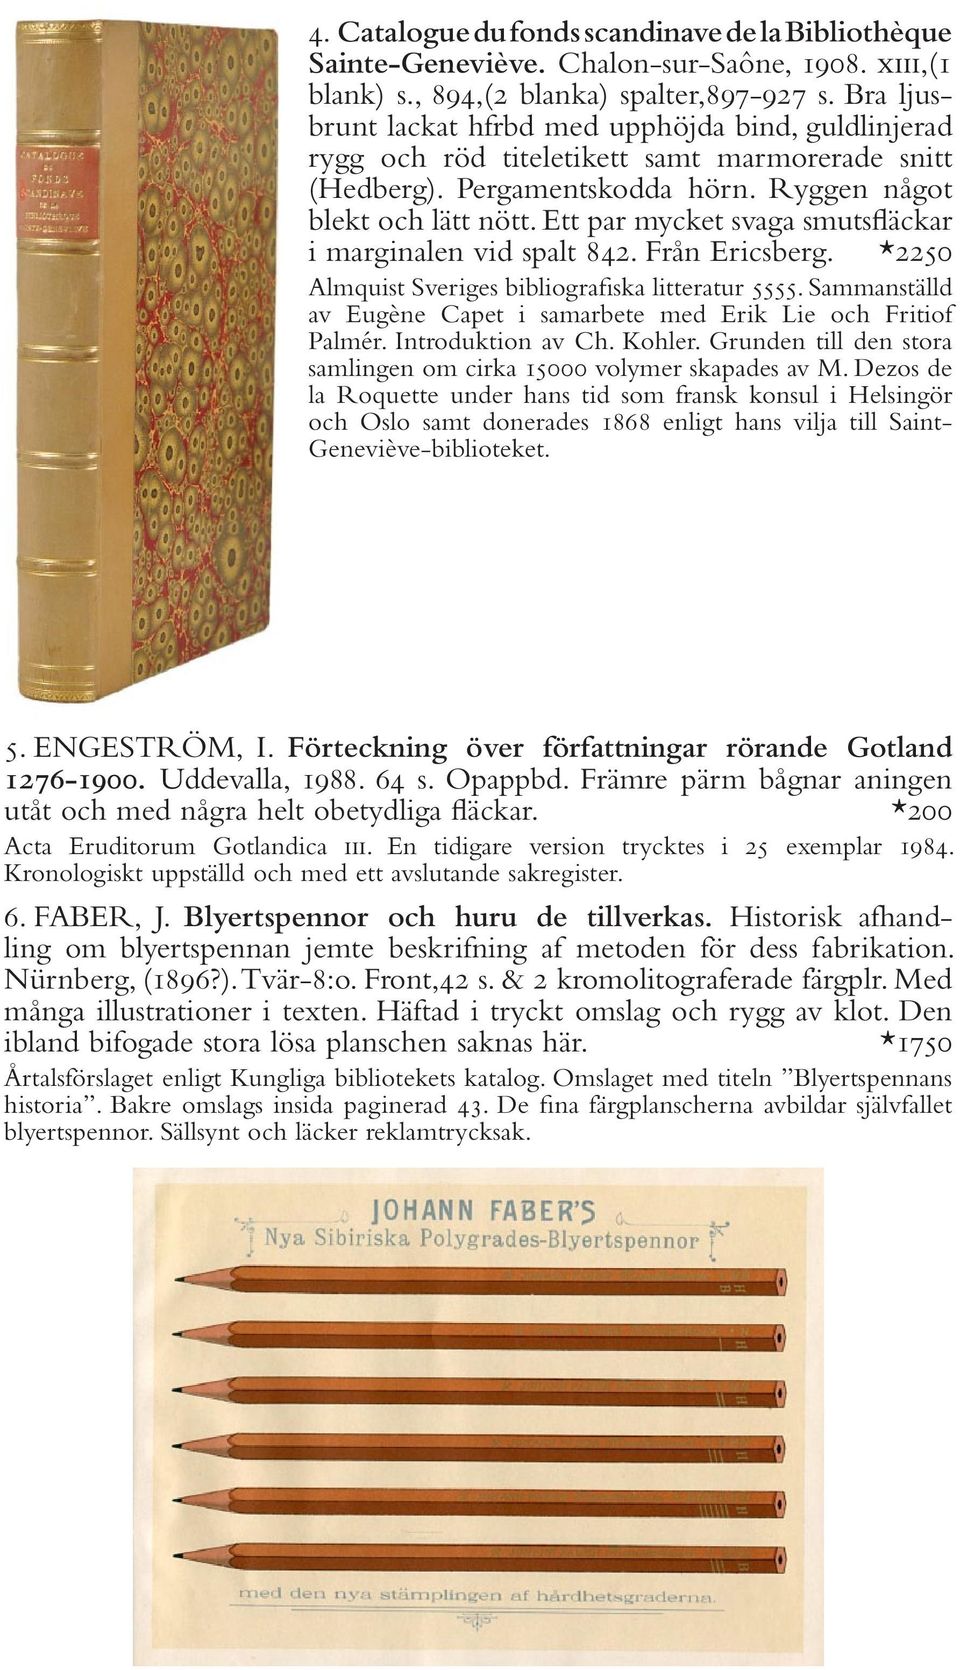 Ett par mycket svaga smutsfläckar i marginalen vid spalt 842. Från Ericsberg. *2250 Almquist Sveriges bibliografiska litteratur 5555.